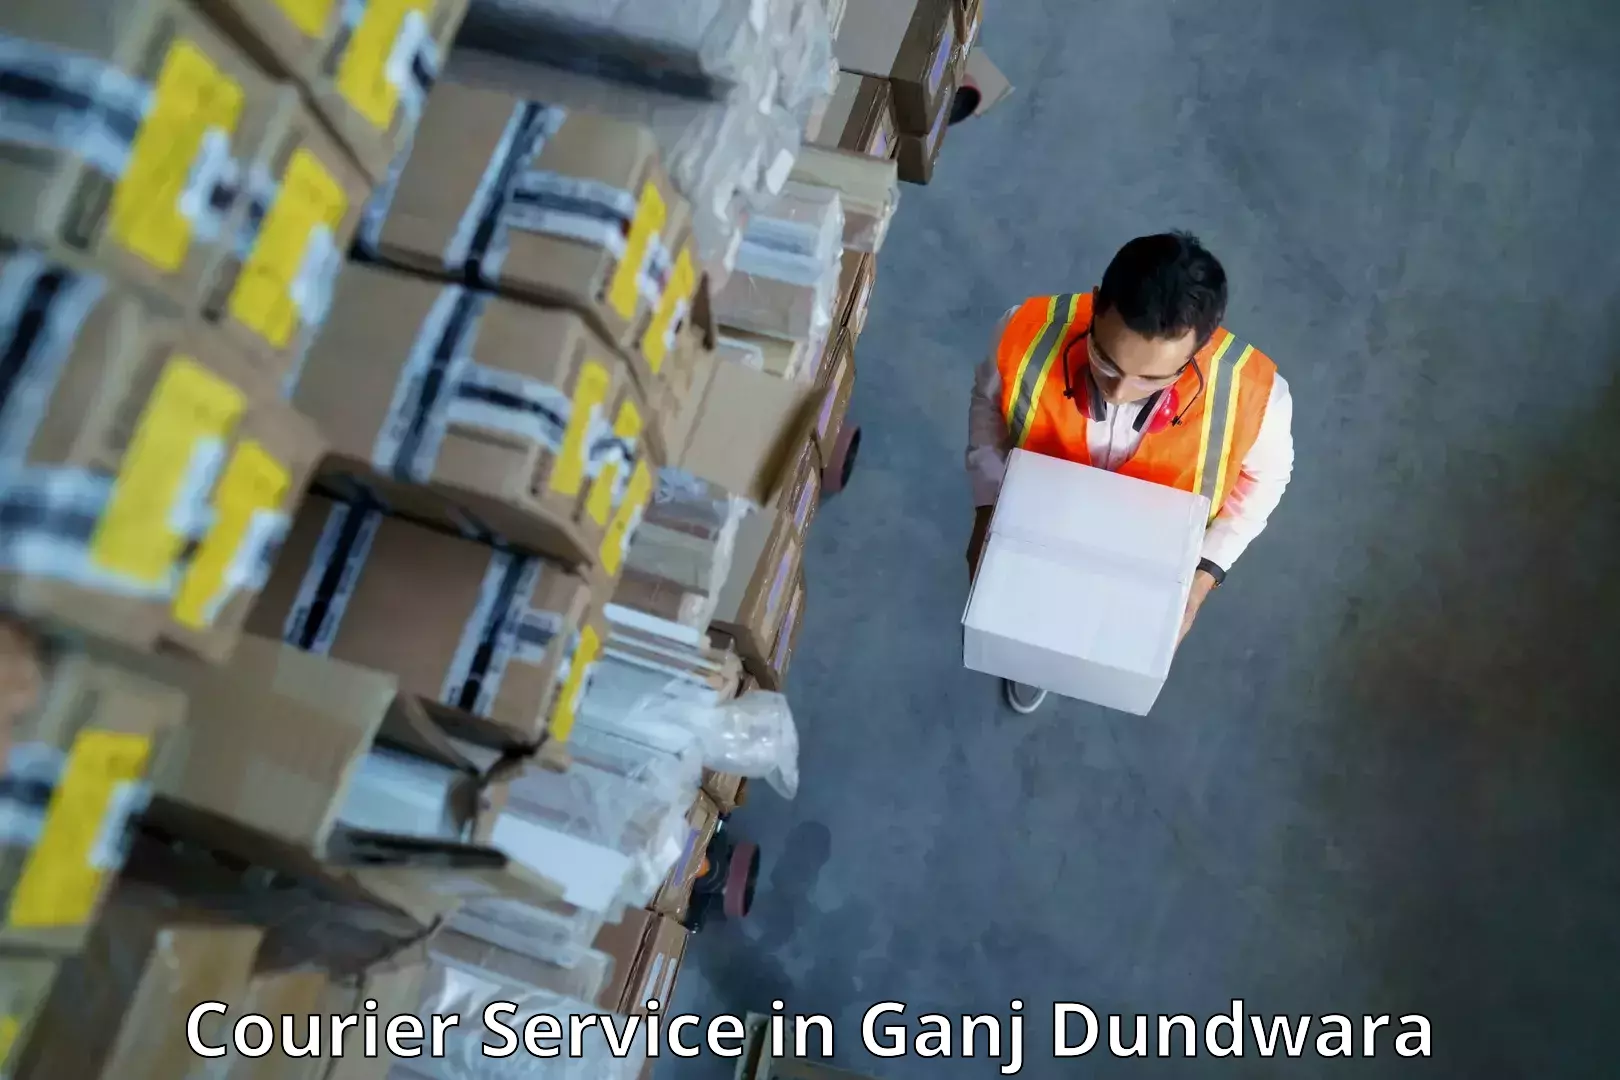 Expedited shipping methods in Ganj Dundwara